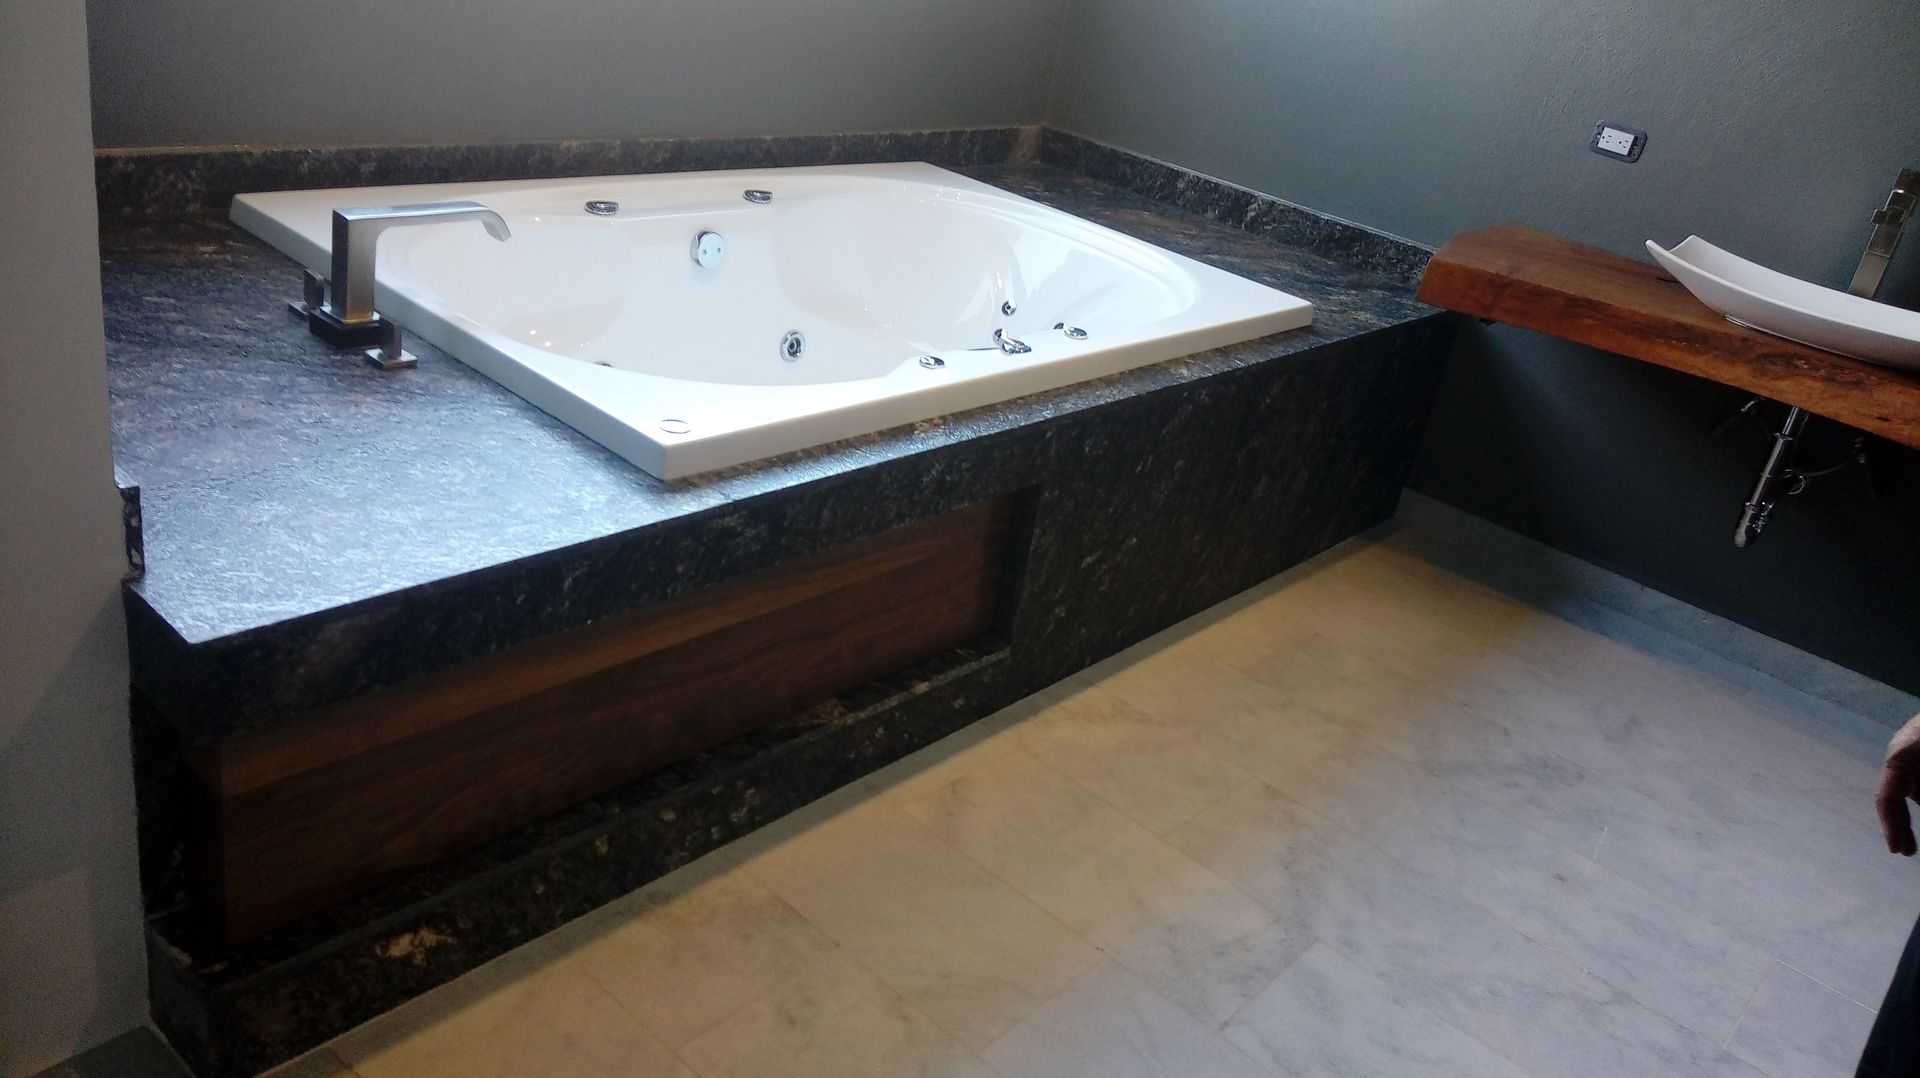 Detalle baño principal GRUPO VOLTA Baños modernos Granito tina,granito...